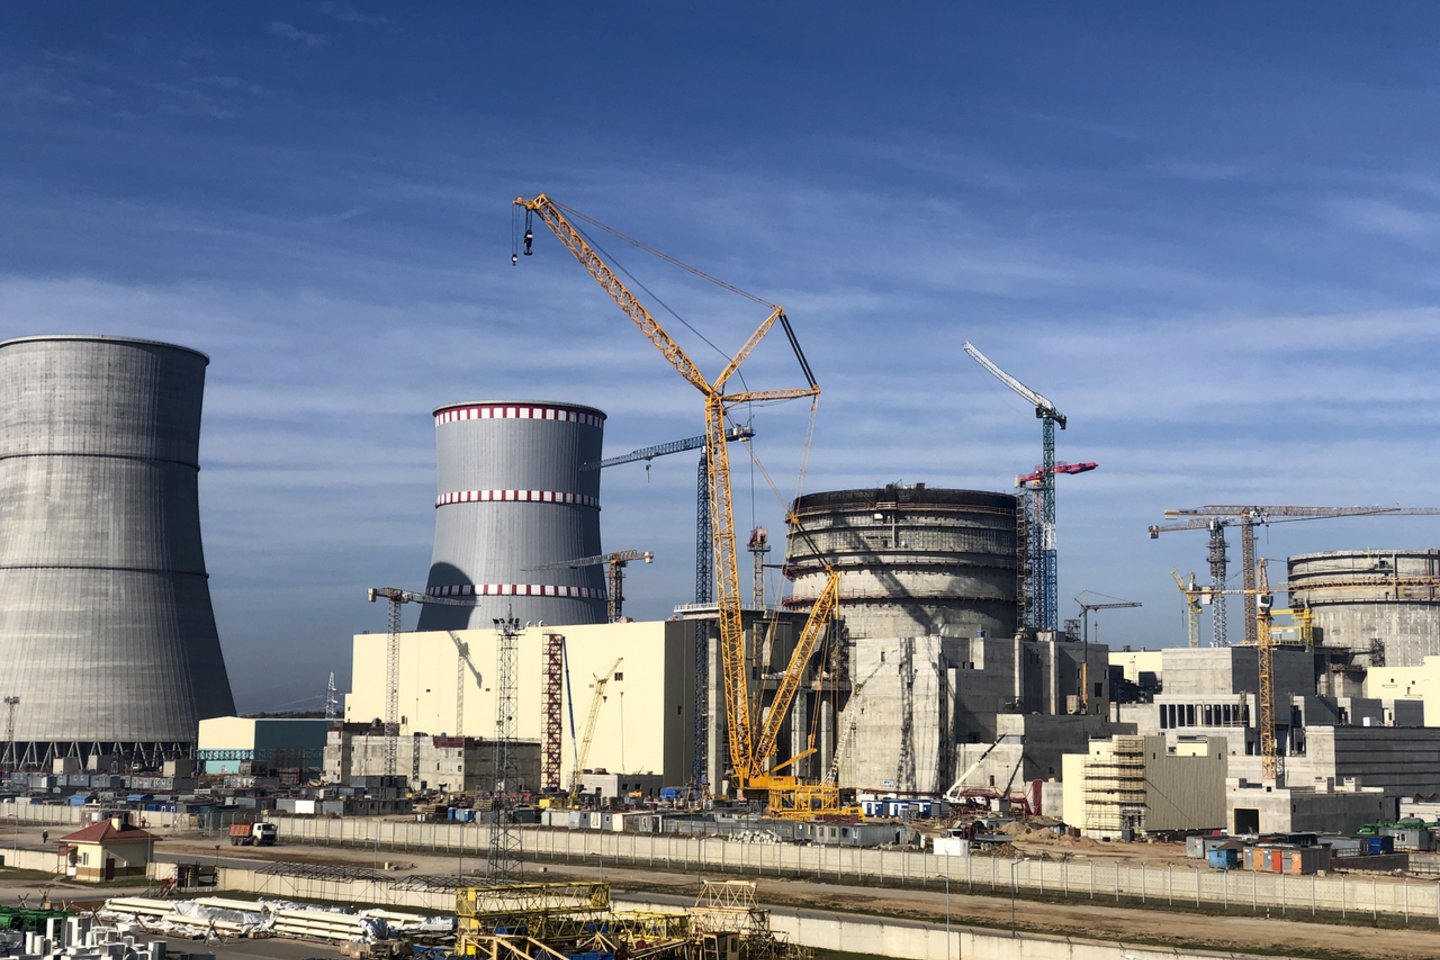 Netoli Lietuvos valstybinės statoma pirmoji Baltarusijoje branduolinė jėgainė turės du vienodos galios rusiško VVER projekto reaktorius – po beveik 1,2 gigavato.<br>V.Ščiavinsko nuotr.